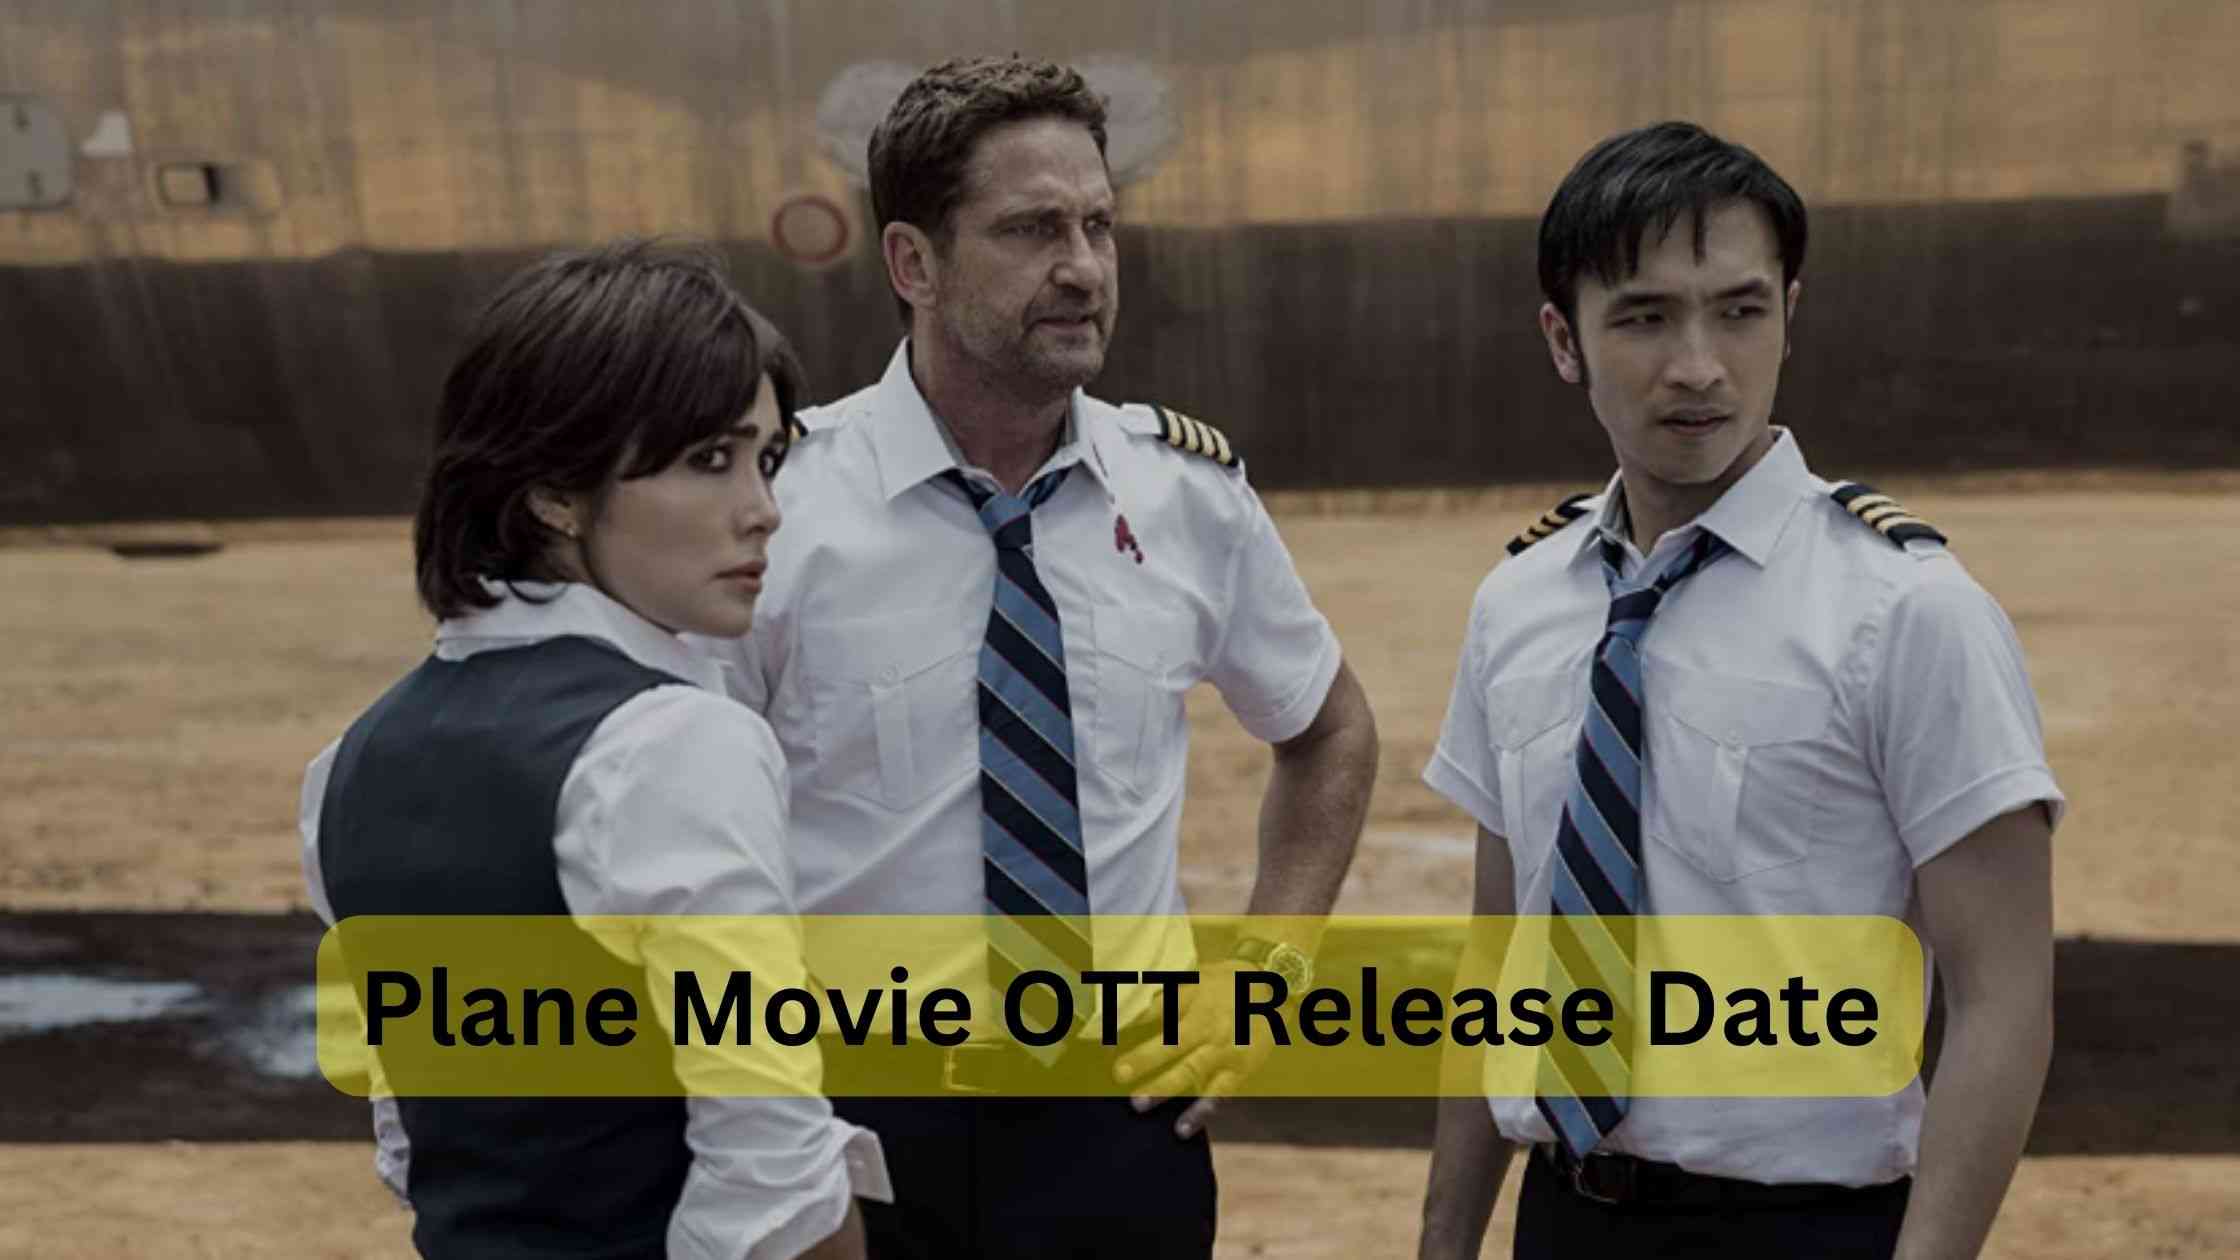 Plane movie OTT release date